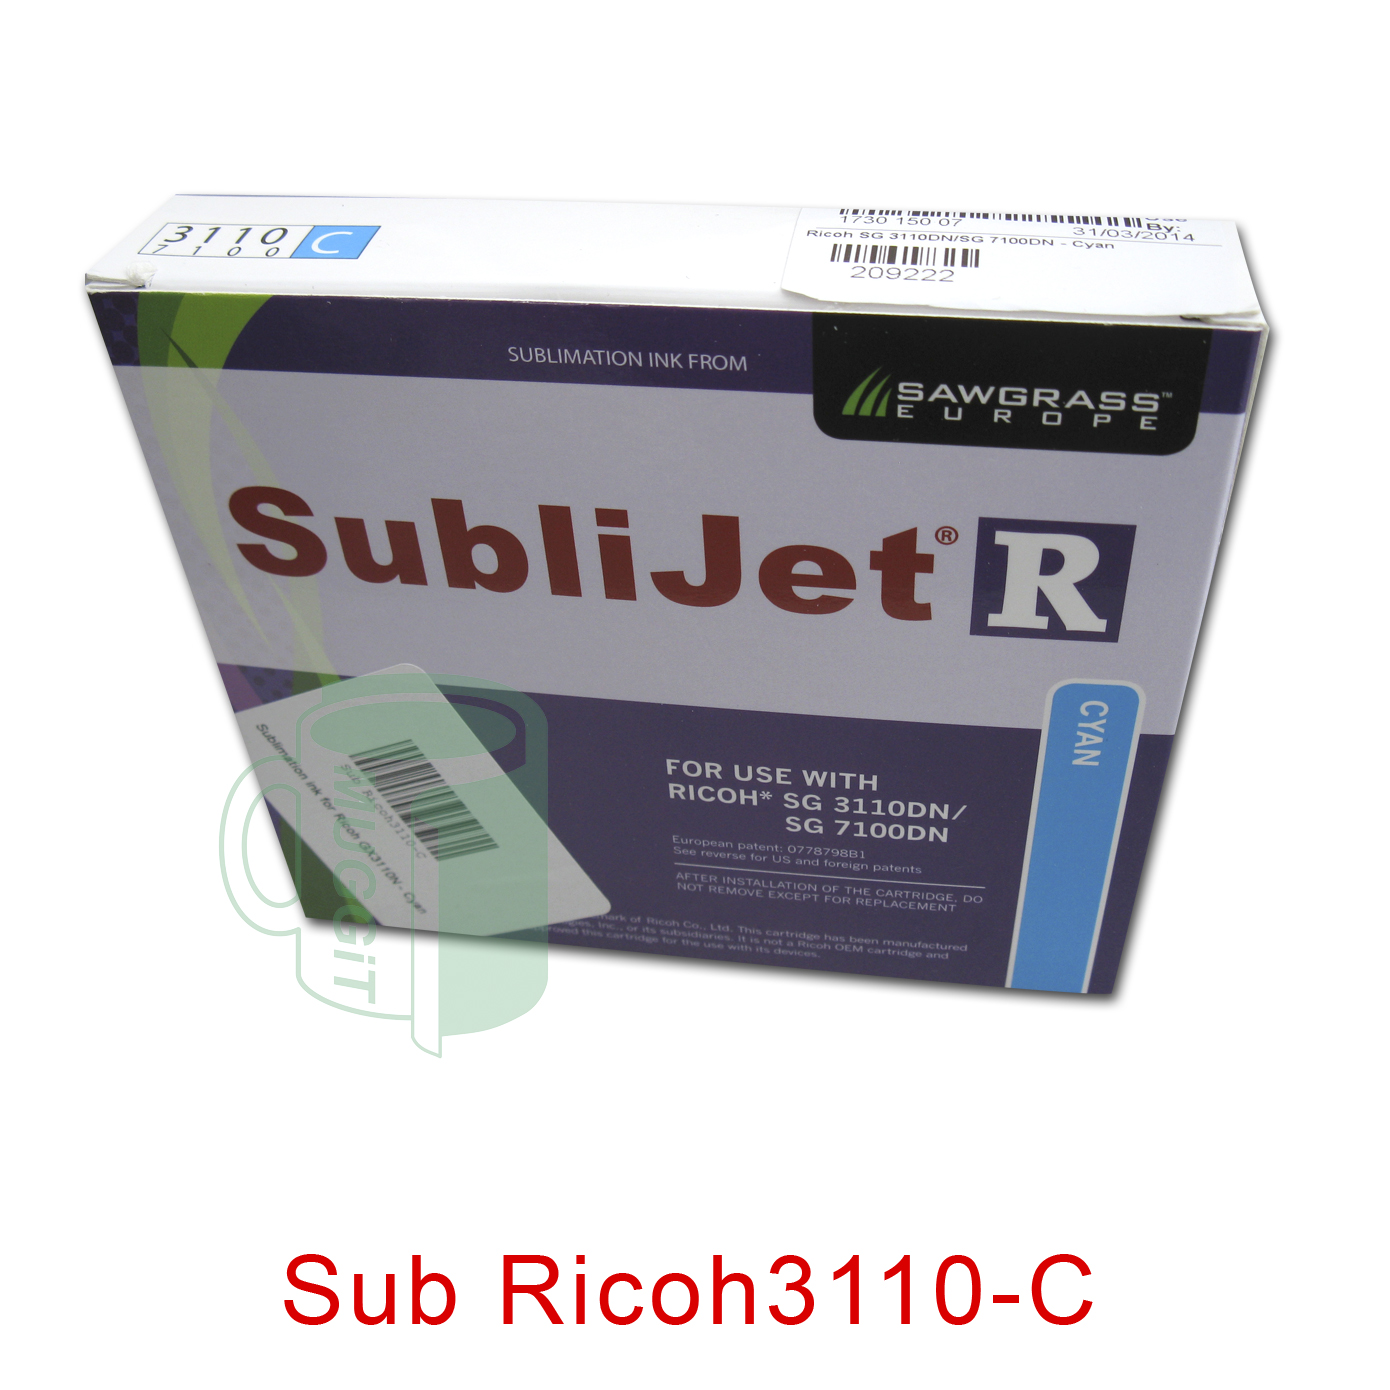 Sub Ricoh3110-C